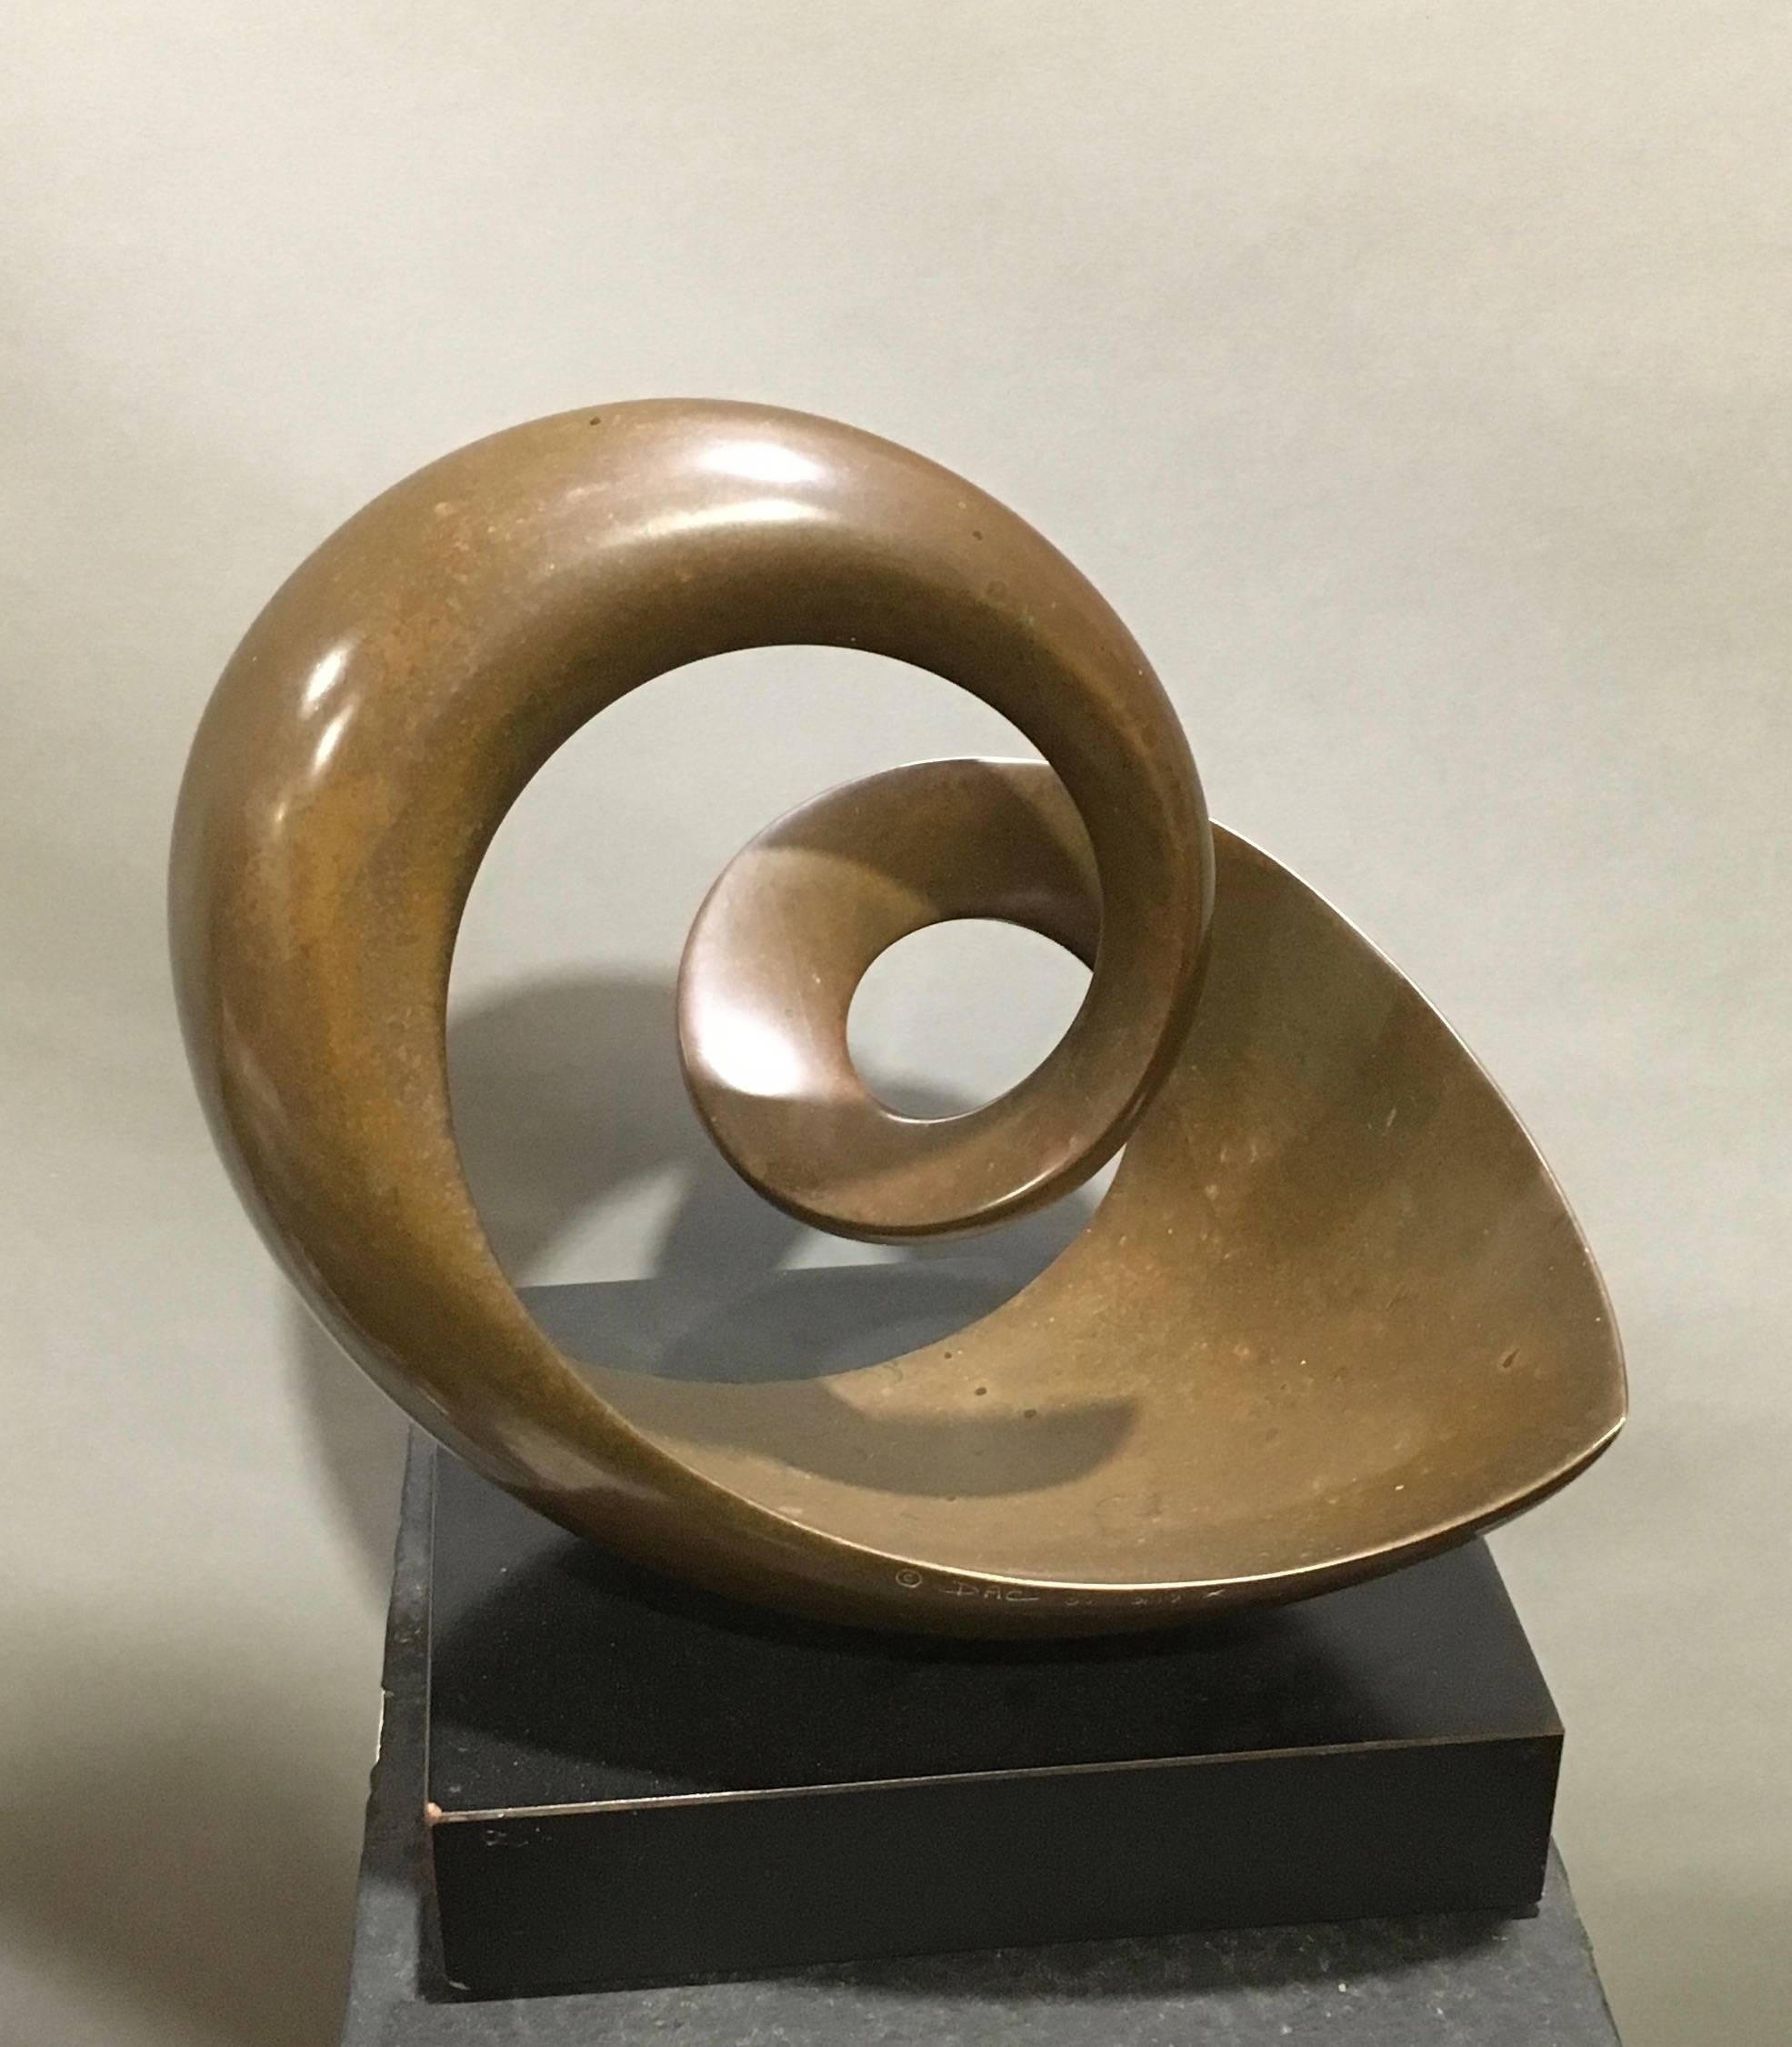 David Chamberlain Abstract Sculpture - Mazurka, An American Bronze Sculpture